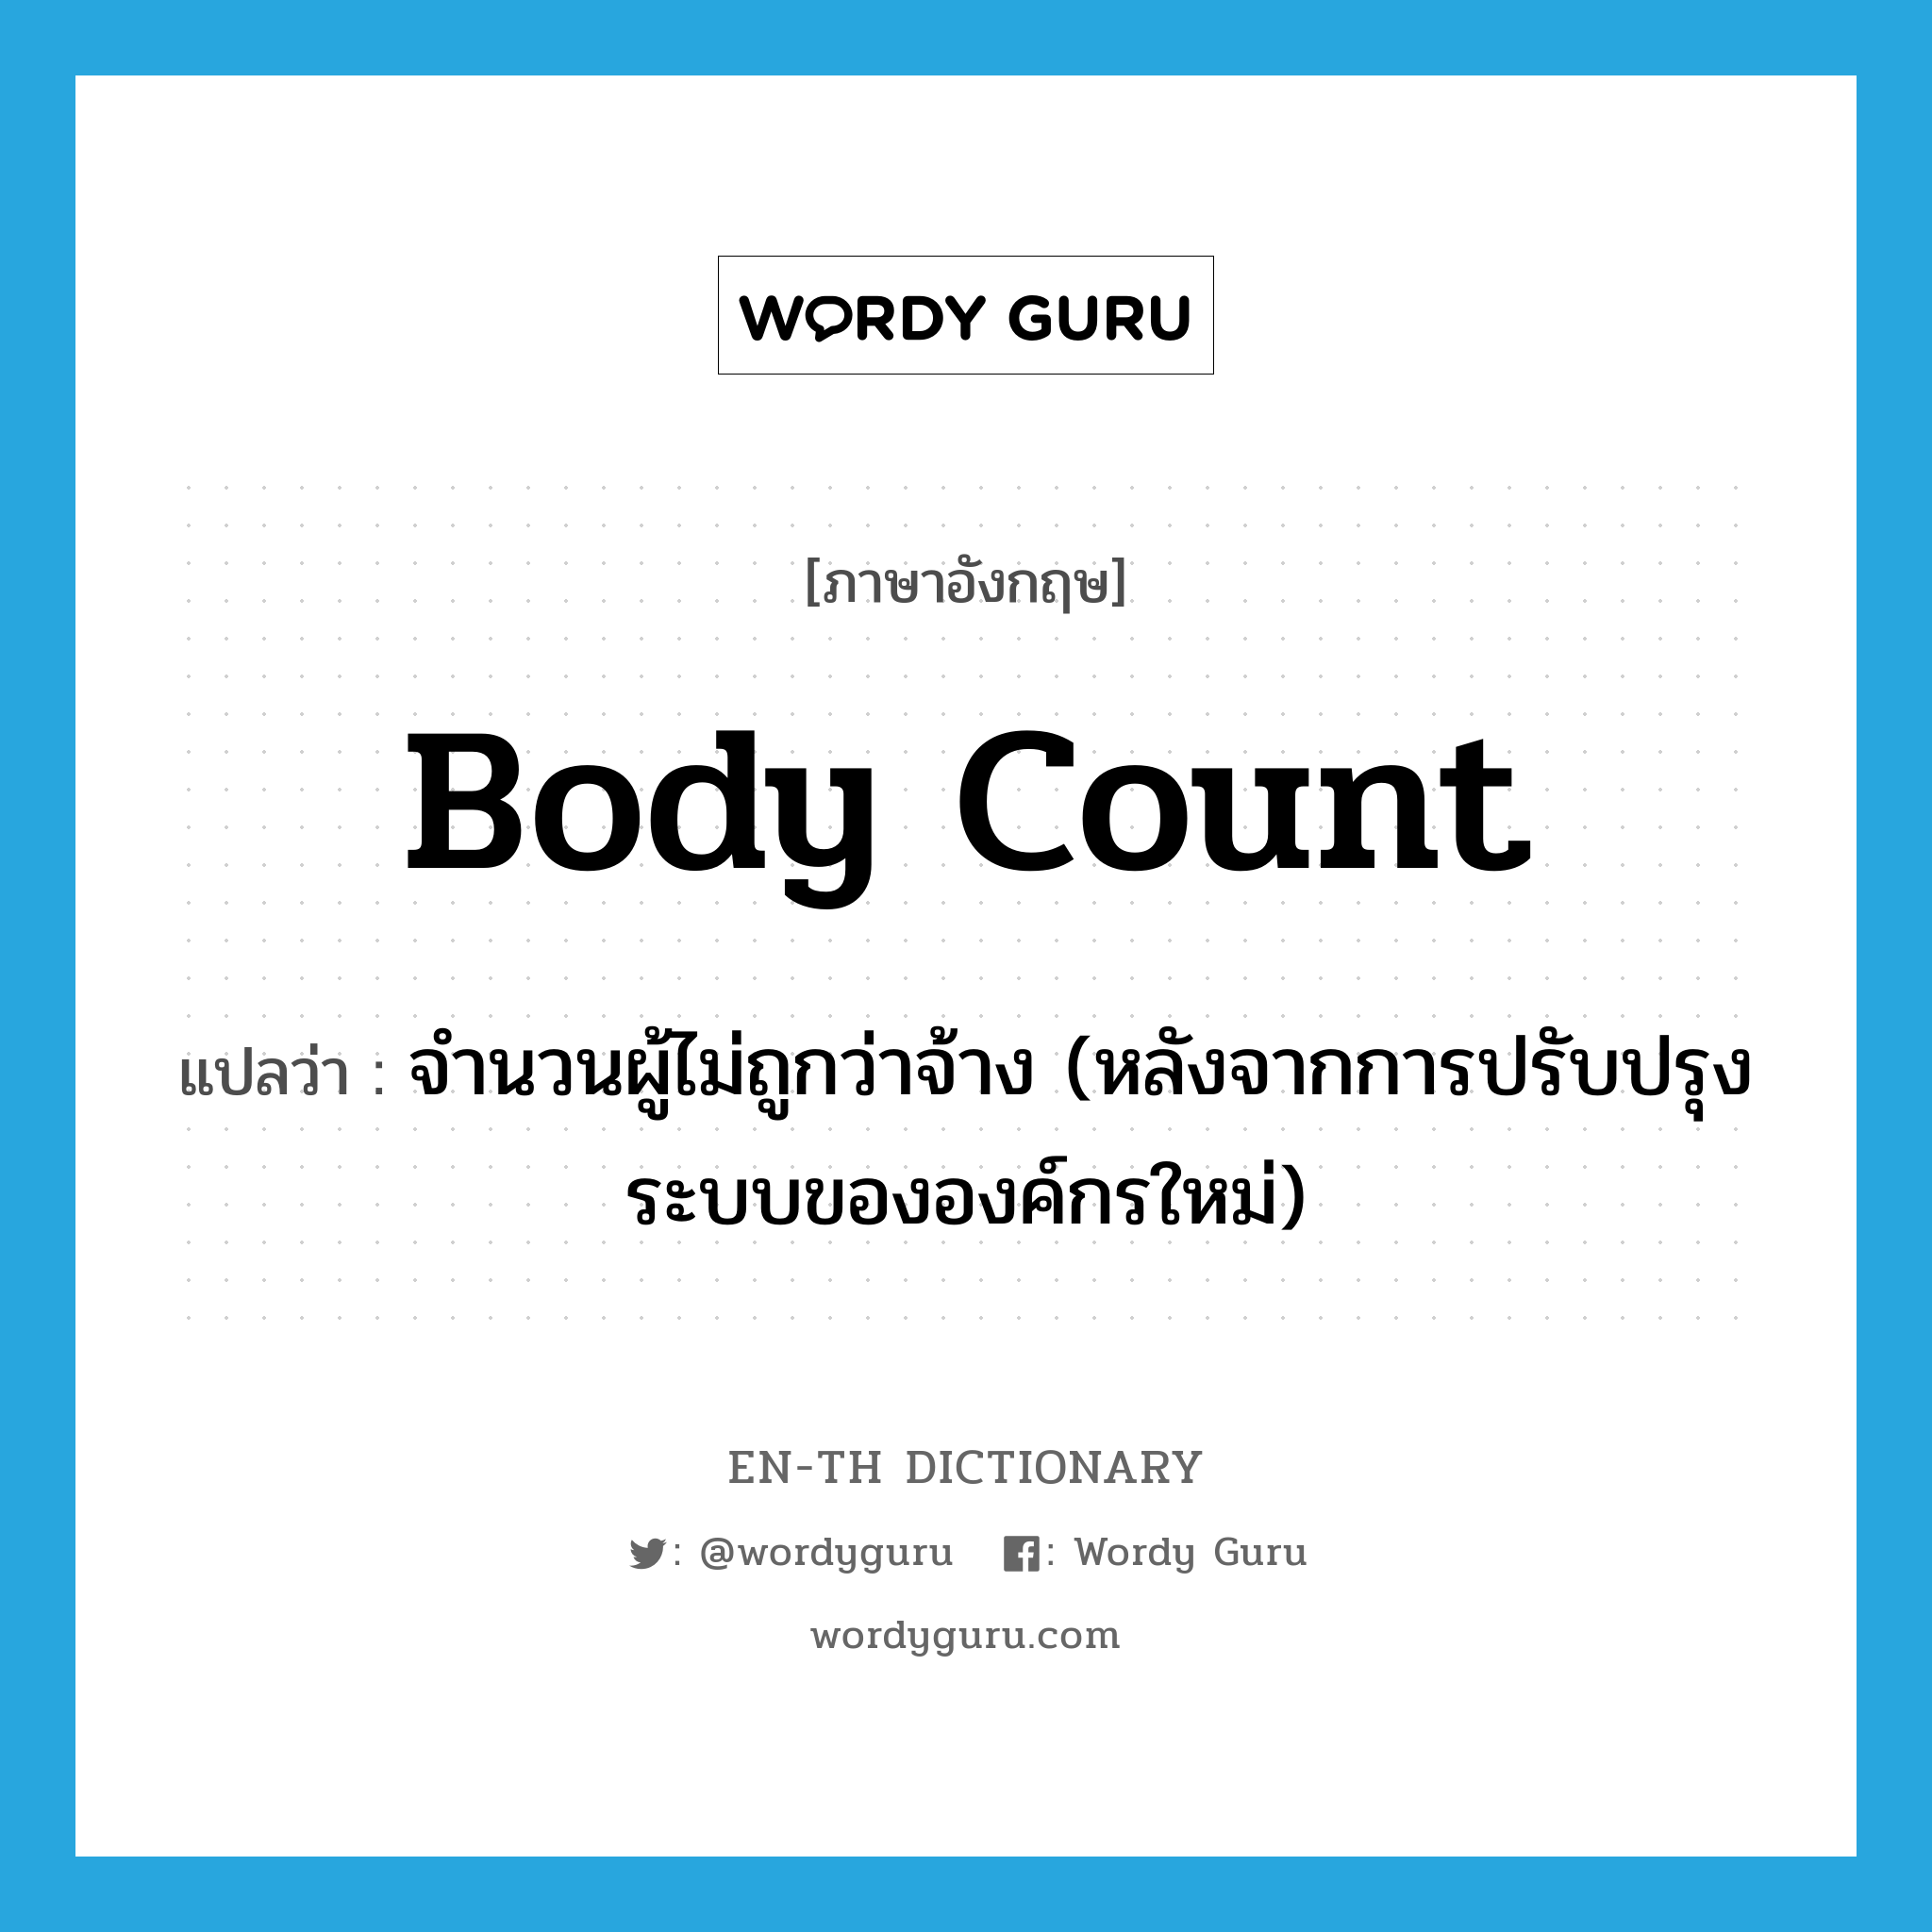 body count แปลว่า?, คำศัพท์ภาษาอังกฤษ body count แปลว่า จำนวนผู้ไม่ถูกว่าจ้าง (หลังจากการปรับปรุงระบบขององค์กรใหม่) ประเภท SL หมวด SL